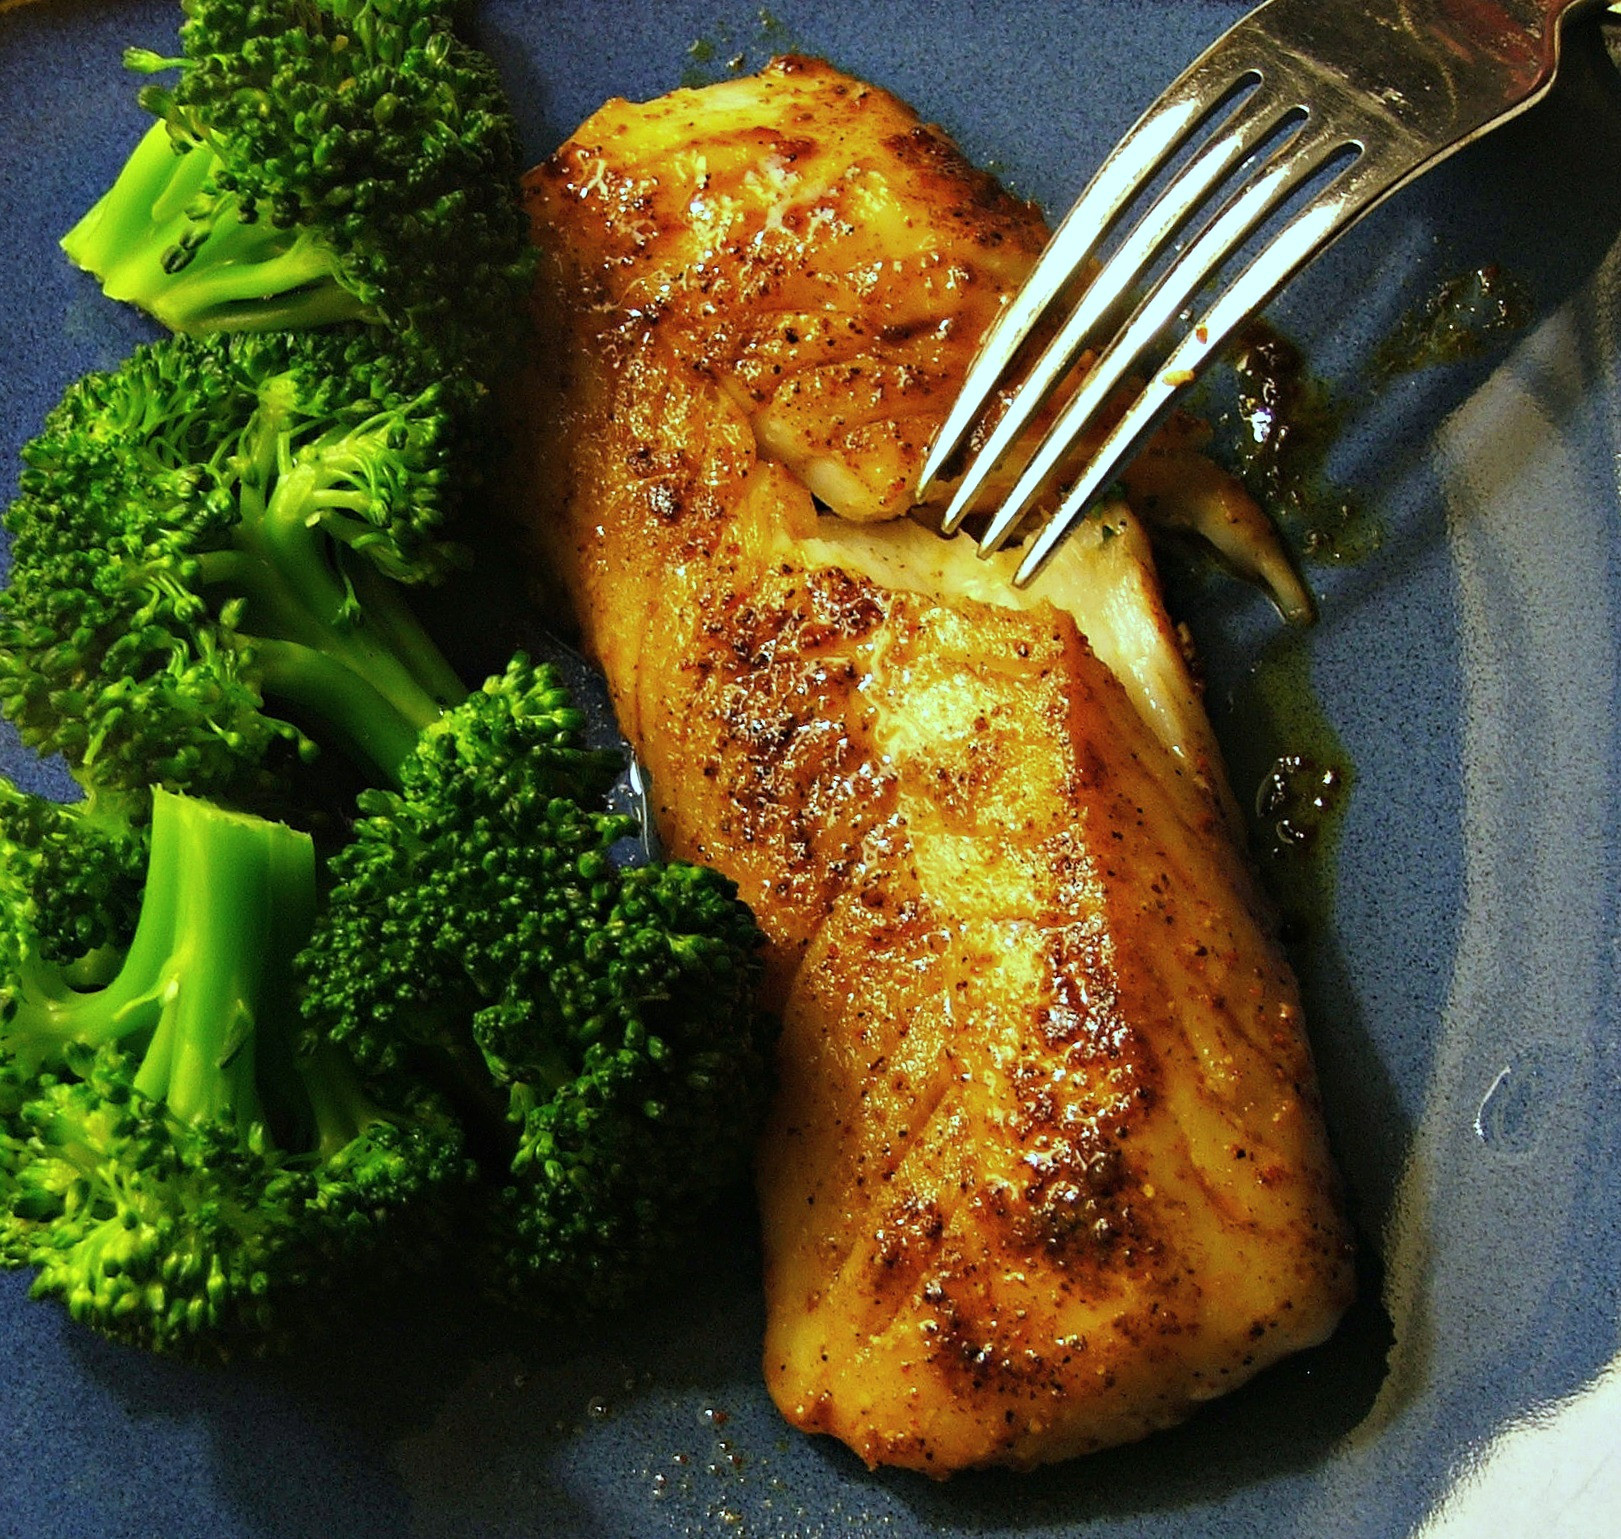 Recipes For Cod Fish
 Super Simple Fish Recipe DetroitMommies